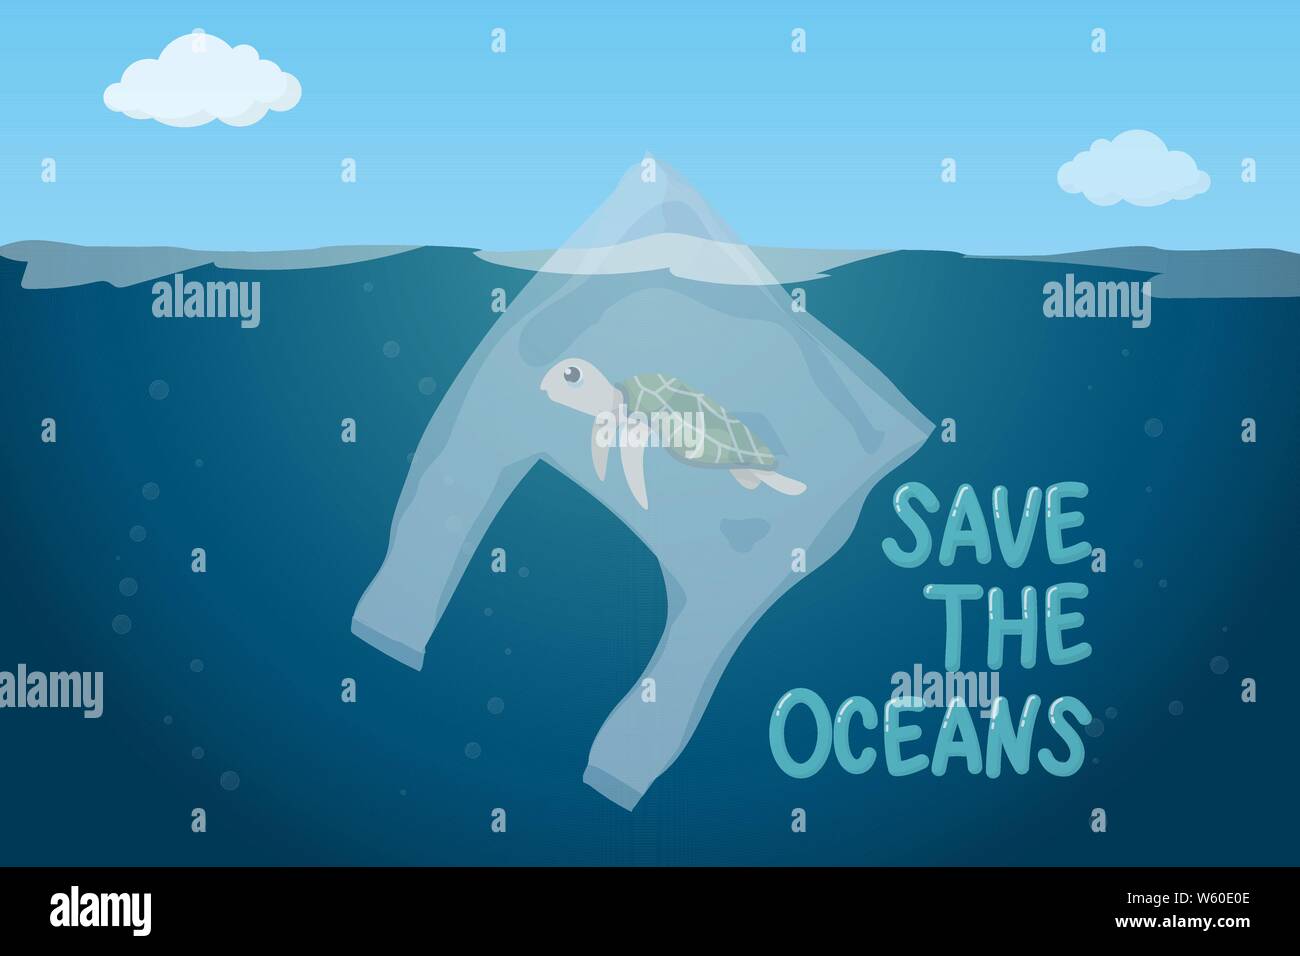 Kunststoff Verschmutzung im Ozean Umweltproblem Konzept. Armen Schildkröten schwimmen in Plastikbeutel Schwimmen im Ozean Stock Vektor